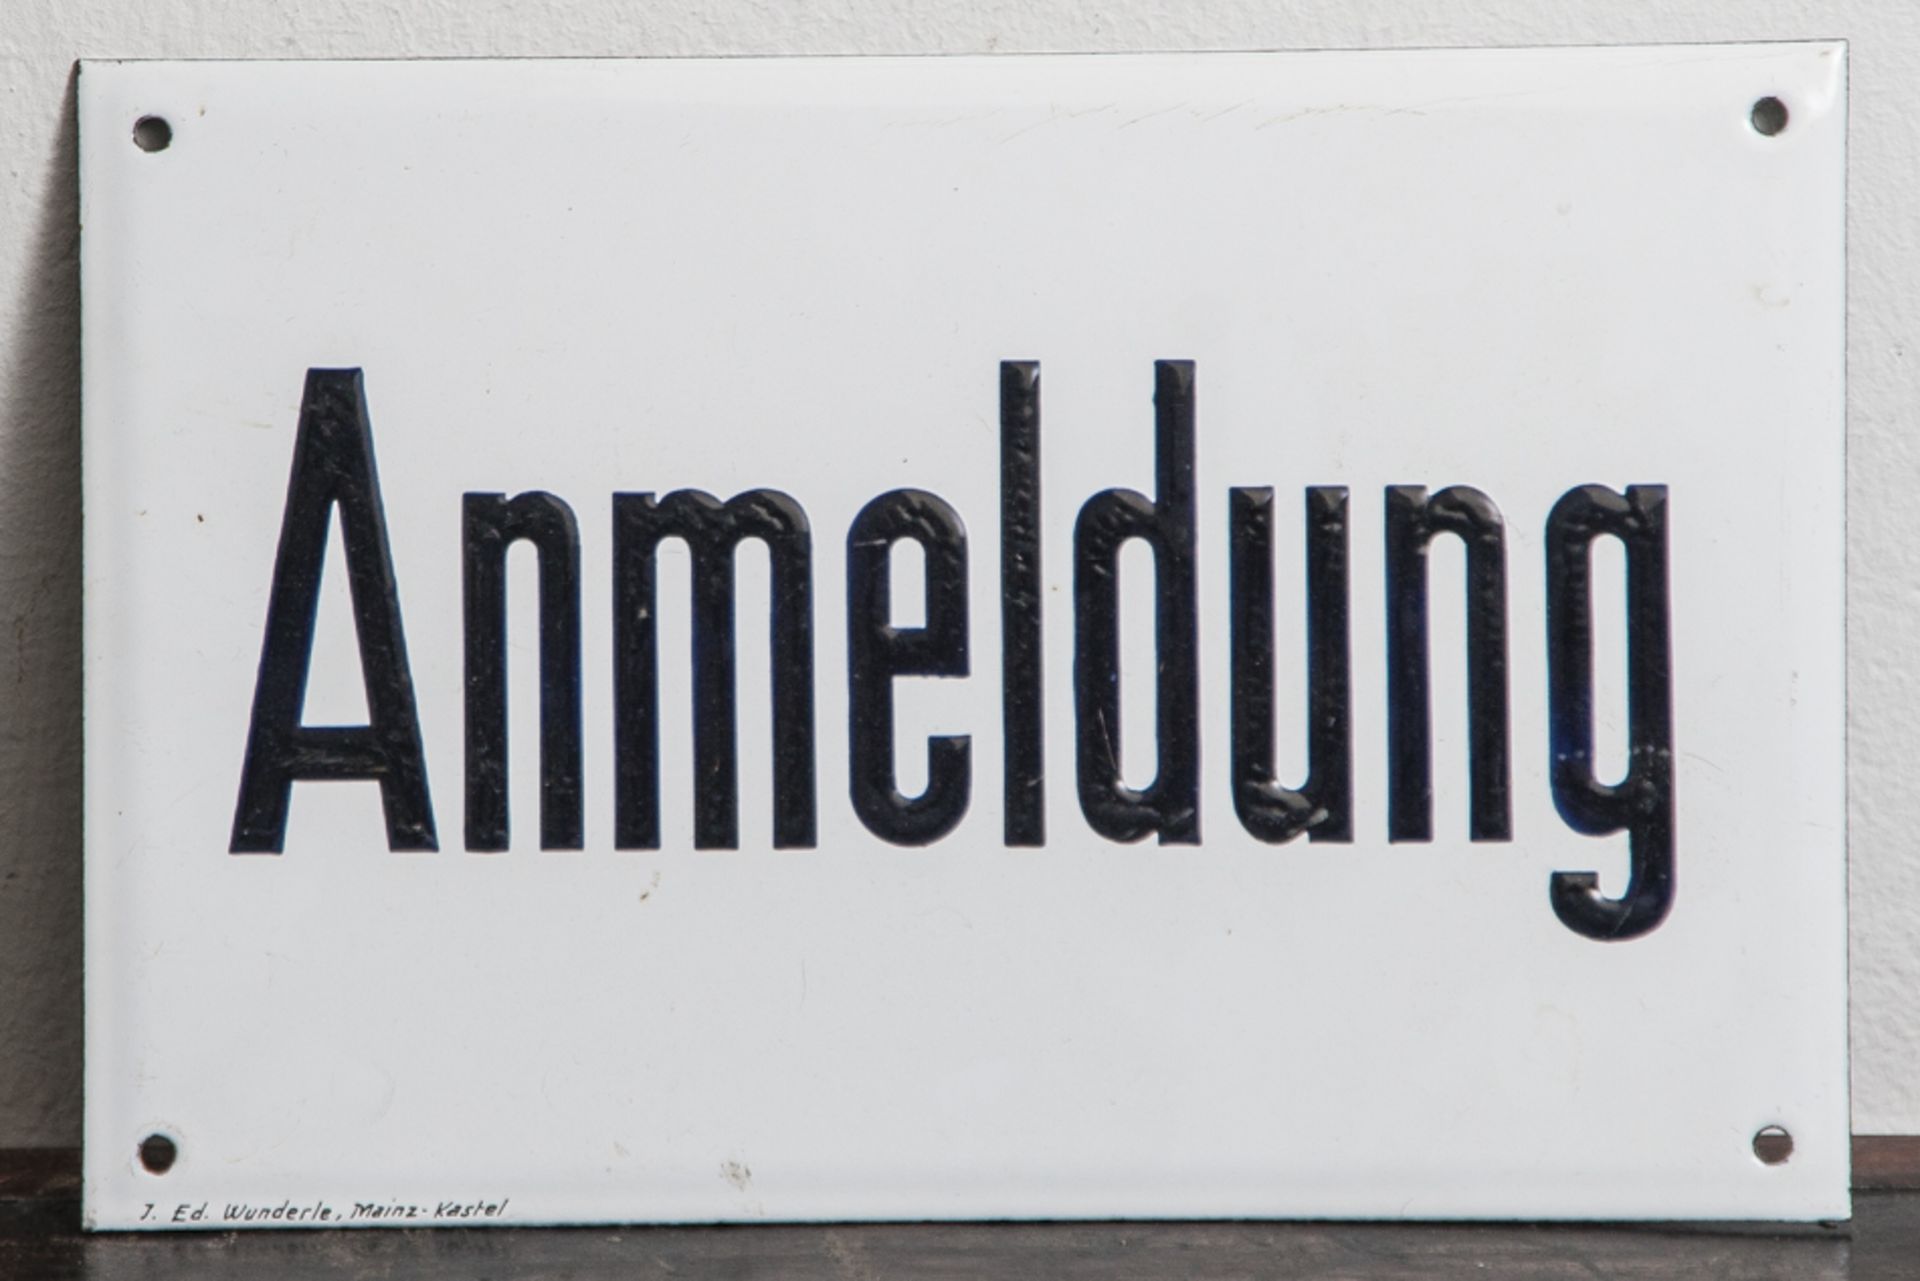 Emailschild, "Anmeldung", J. Ed. Wunderle, Mainz-Kastell. Ca. 20 x 30 cm.